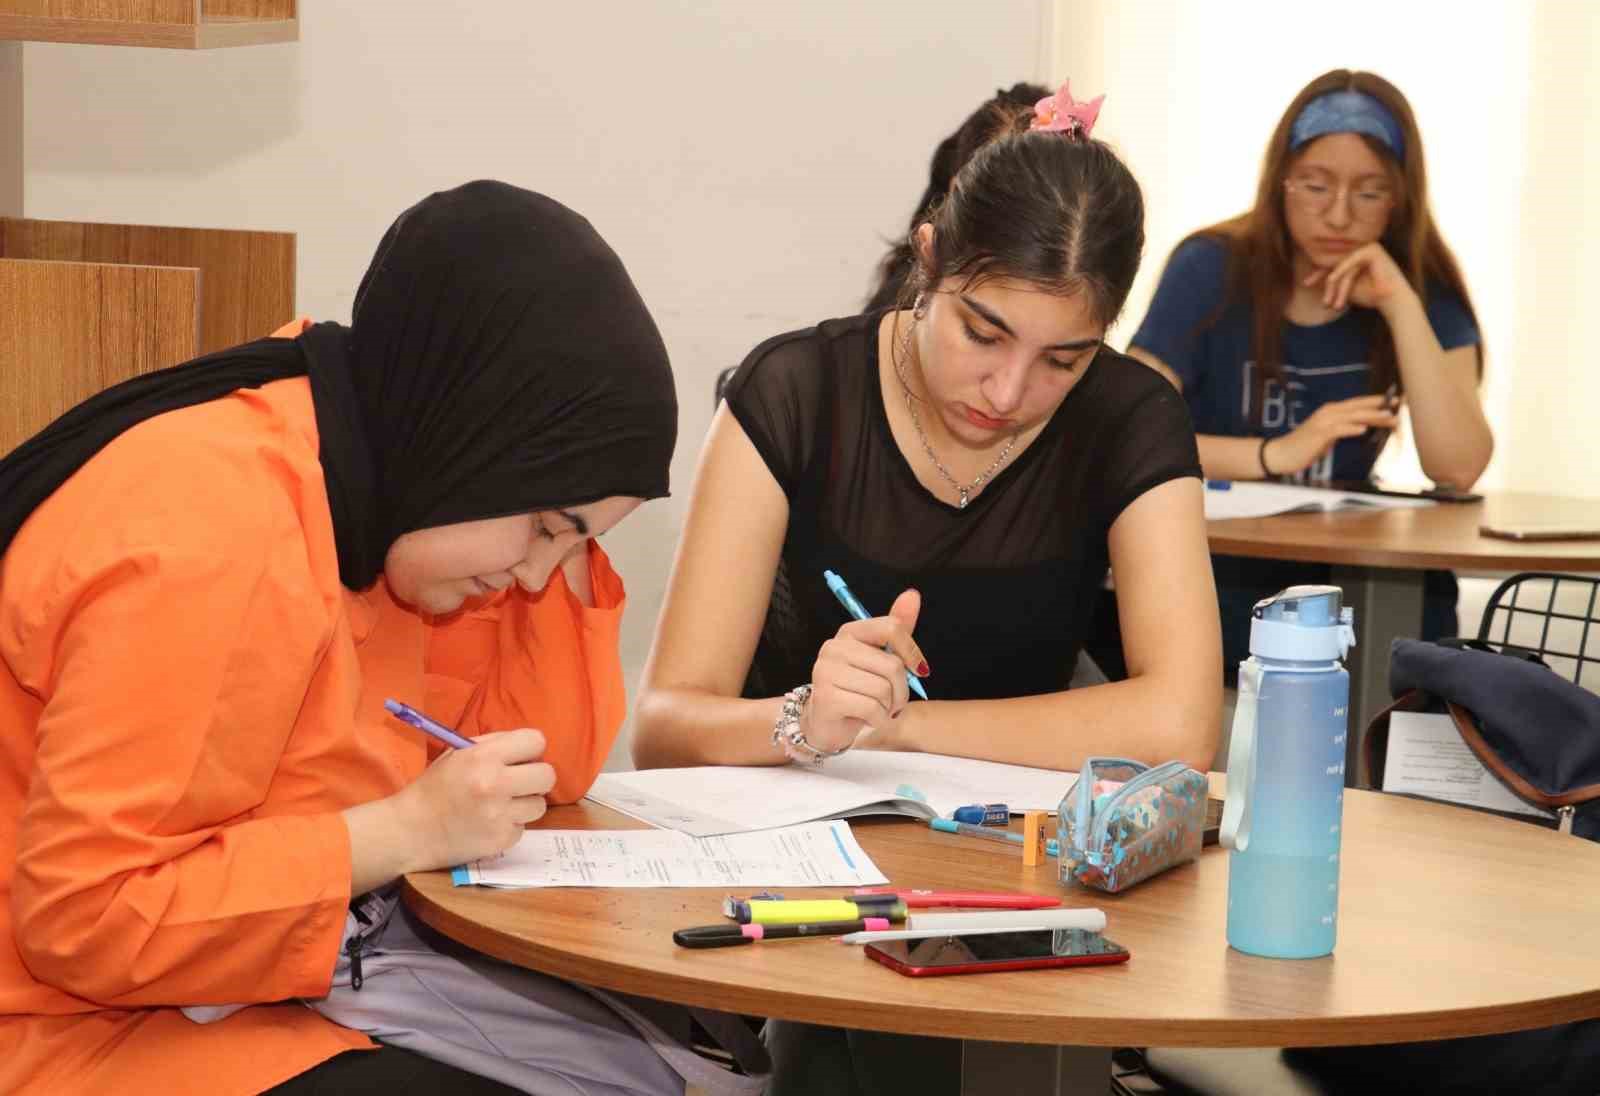 Toroslar’da sınava hazırlanan öğrencilere etüt desteği
